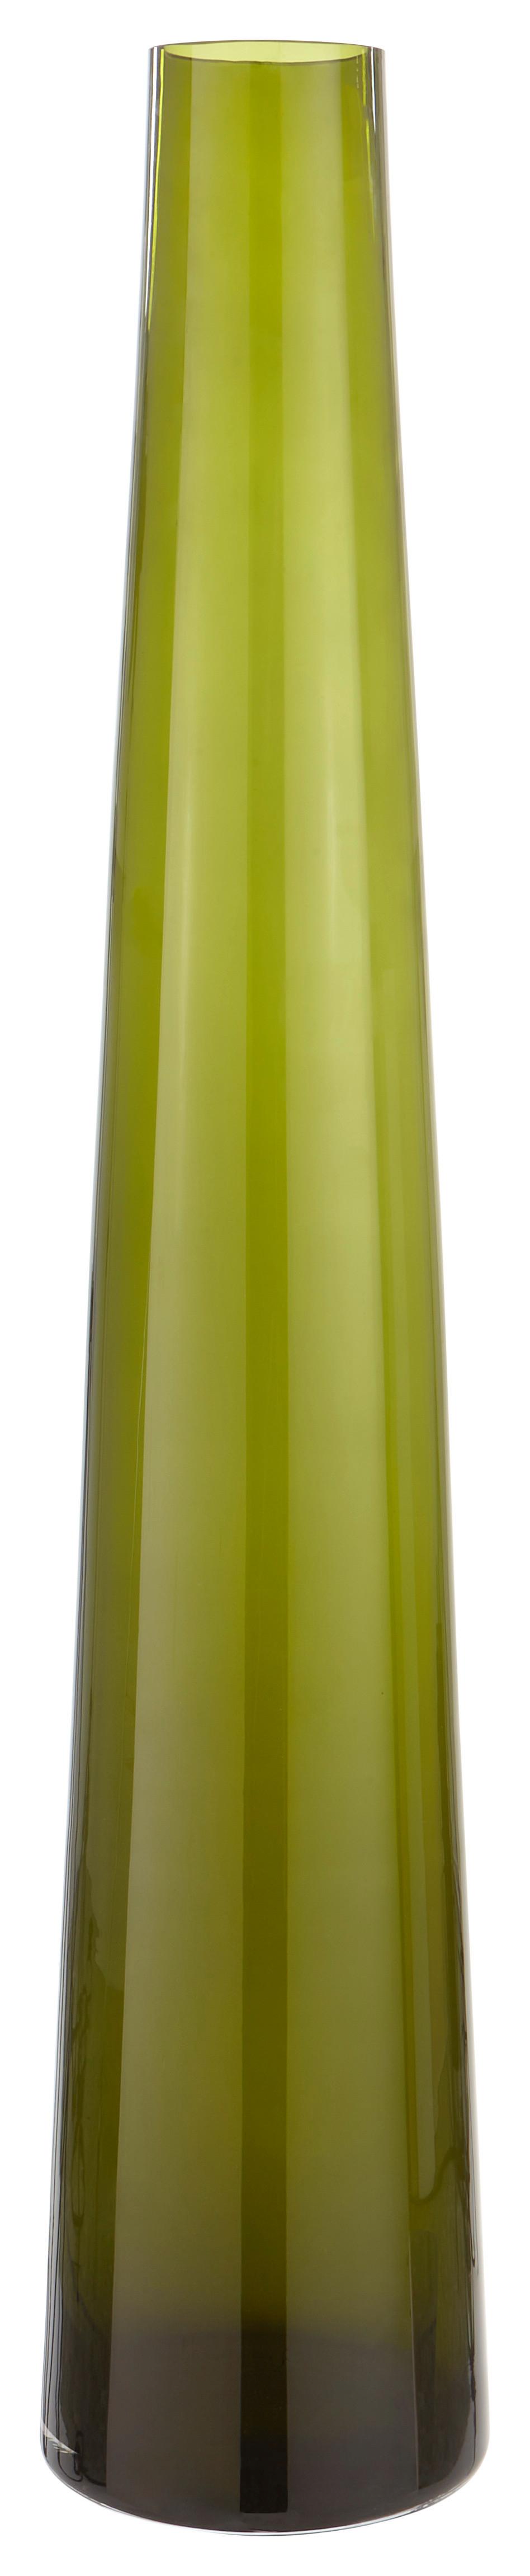 Váza Olivia, Ø/v: 14/70cm - olivovozelená, Romantický / Vidiecky, sklo (14/70cm) - Premium Living